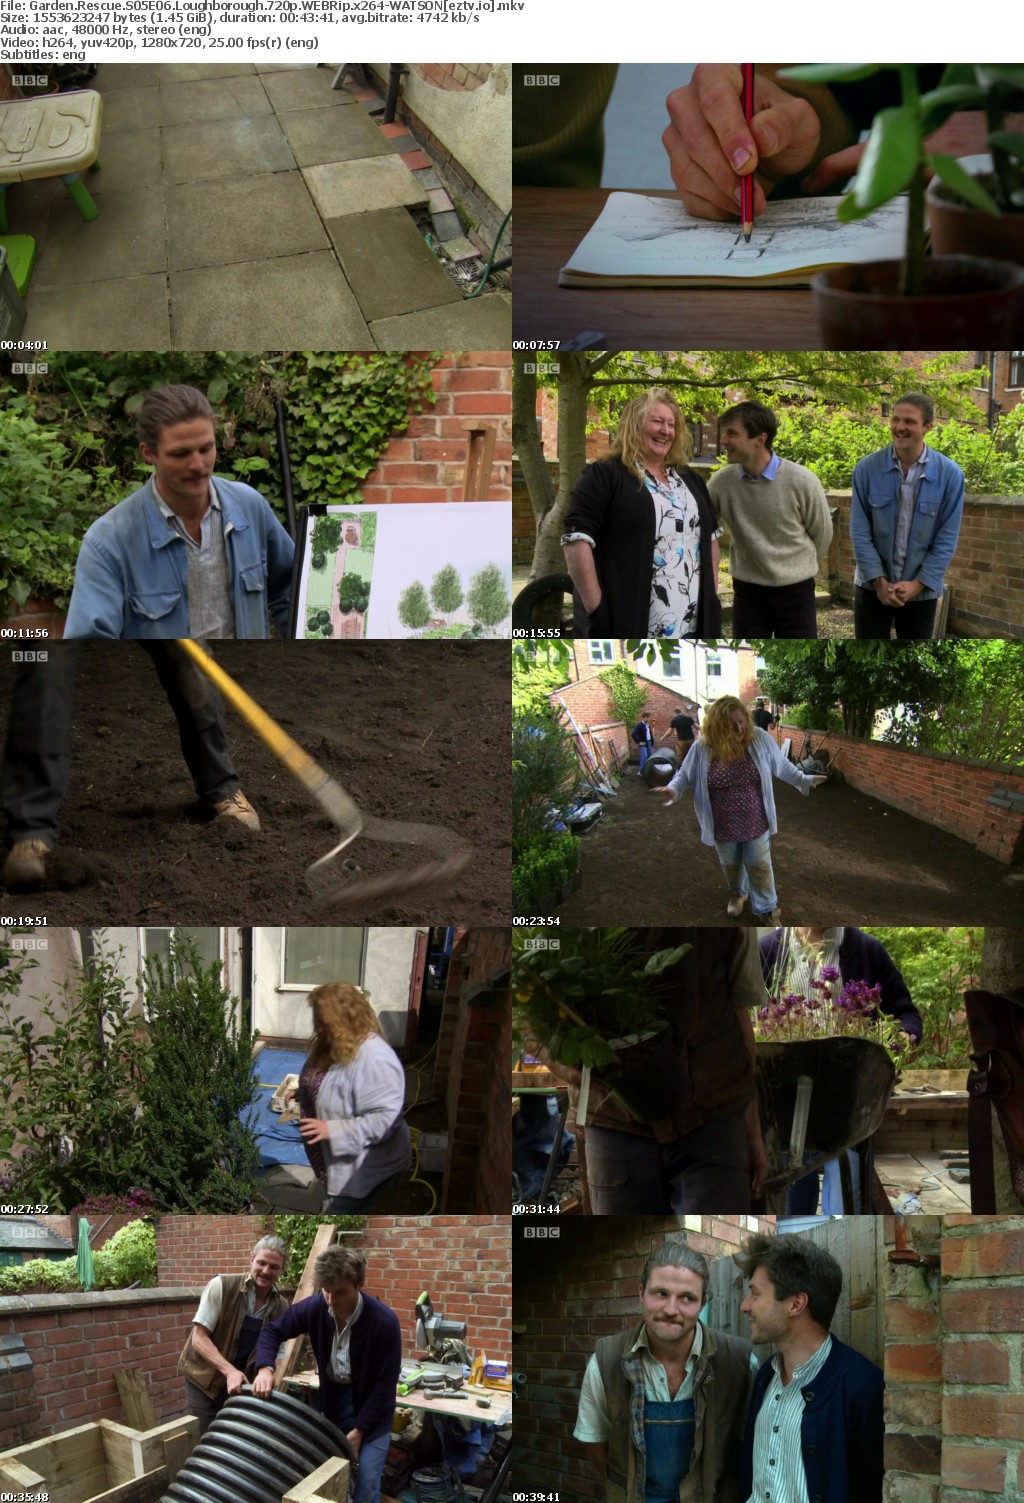 Garden Rescue S05E06 Loughborough 720p WEBRip x264-WATSON